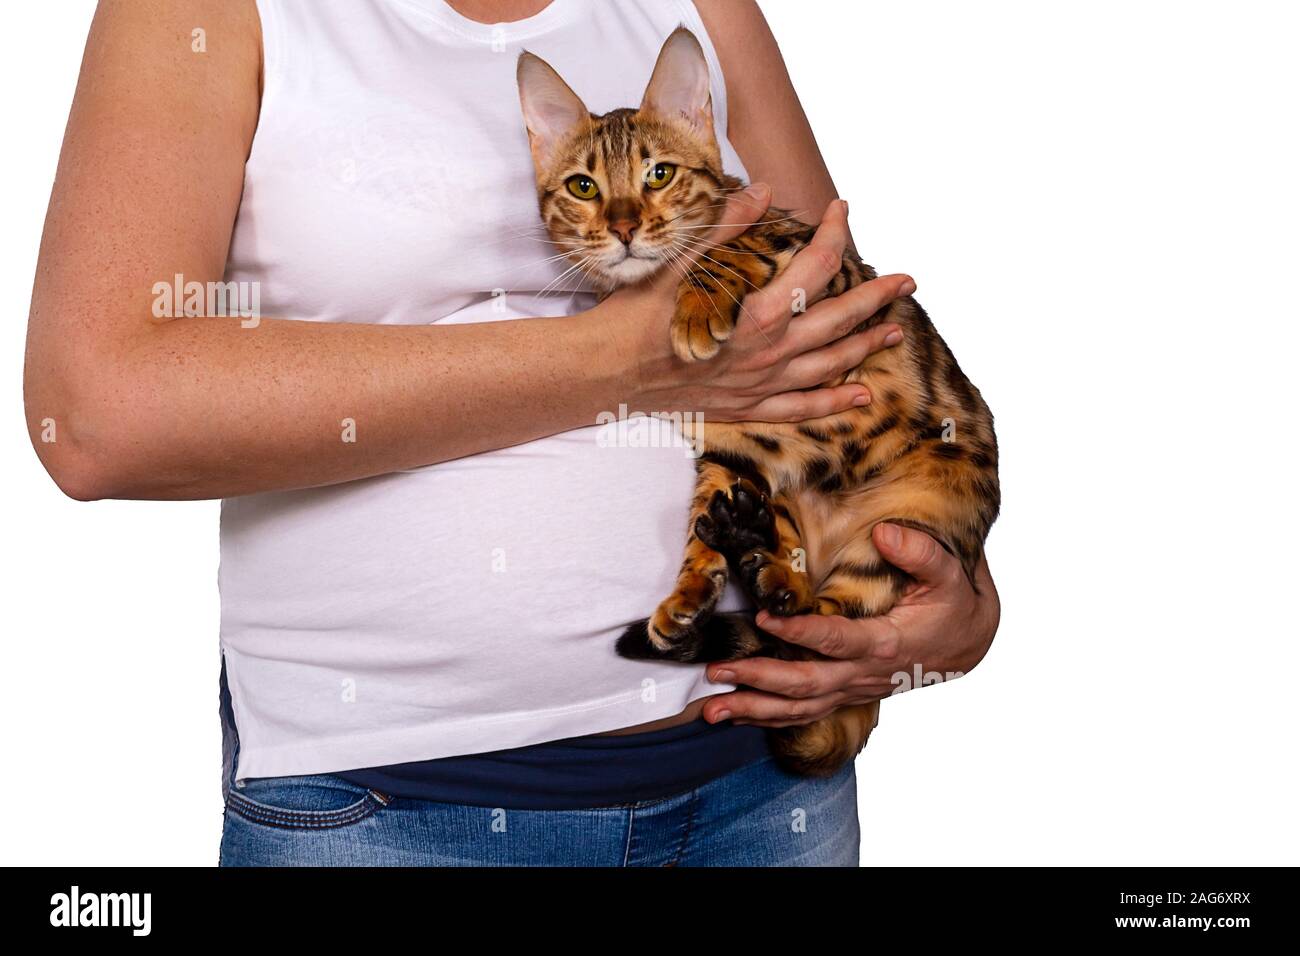 Schwangere Frau mittleren Alters in Jeans und weißen T-Shirt mit Super süße Bengal  Katze. Gefahr der Infektion Toxoplasmose oder Allergie. Gesunde  Mutterschaft li Stockfotografie - Alamy